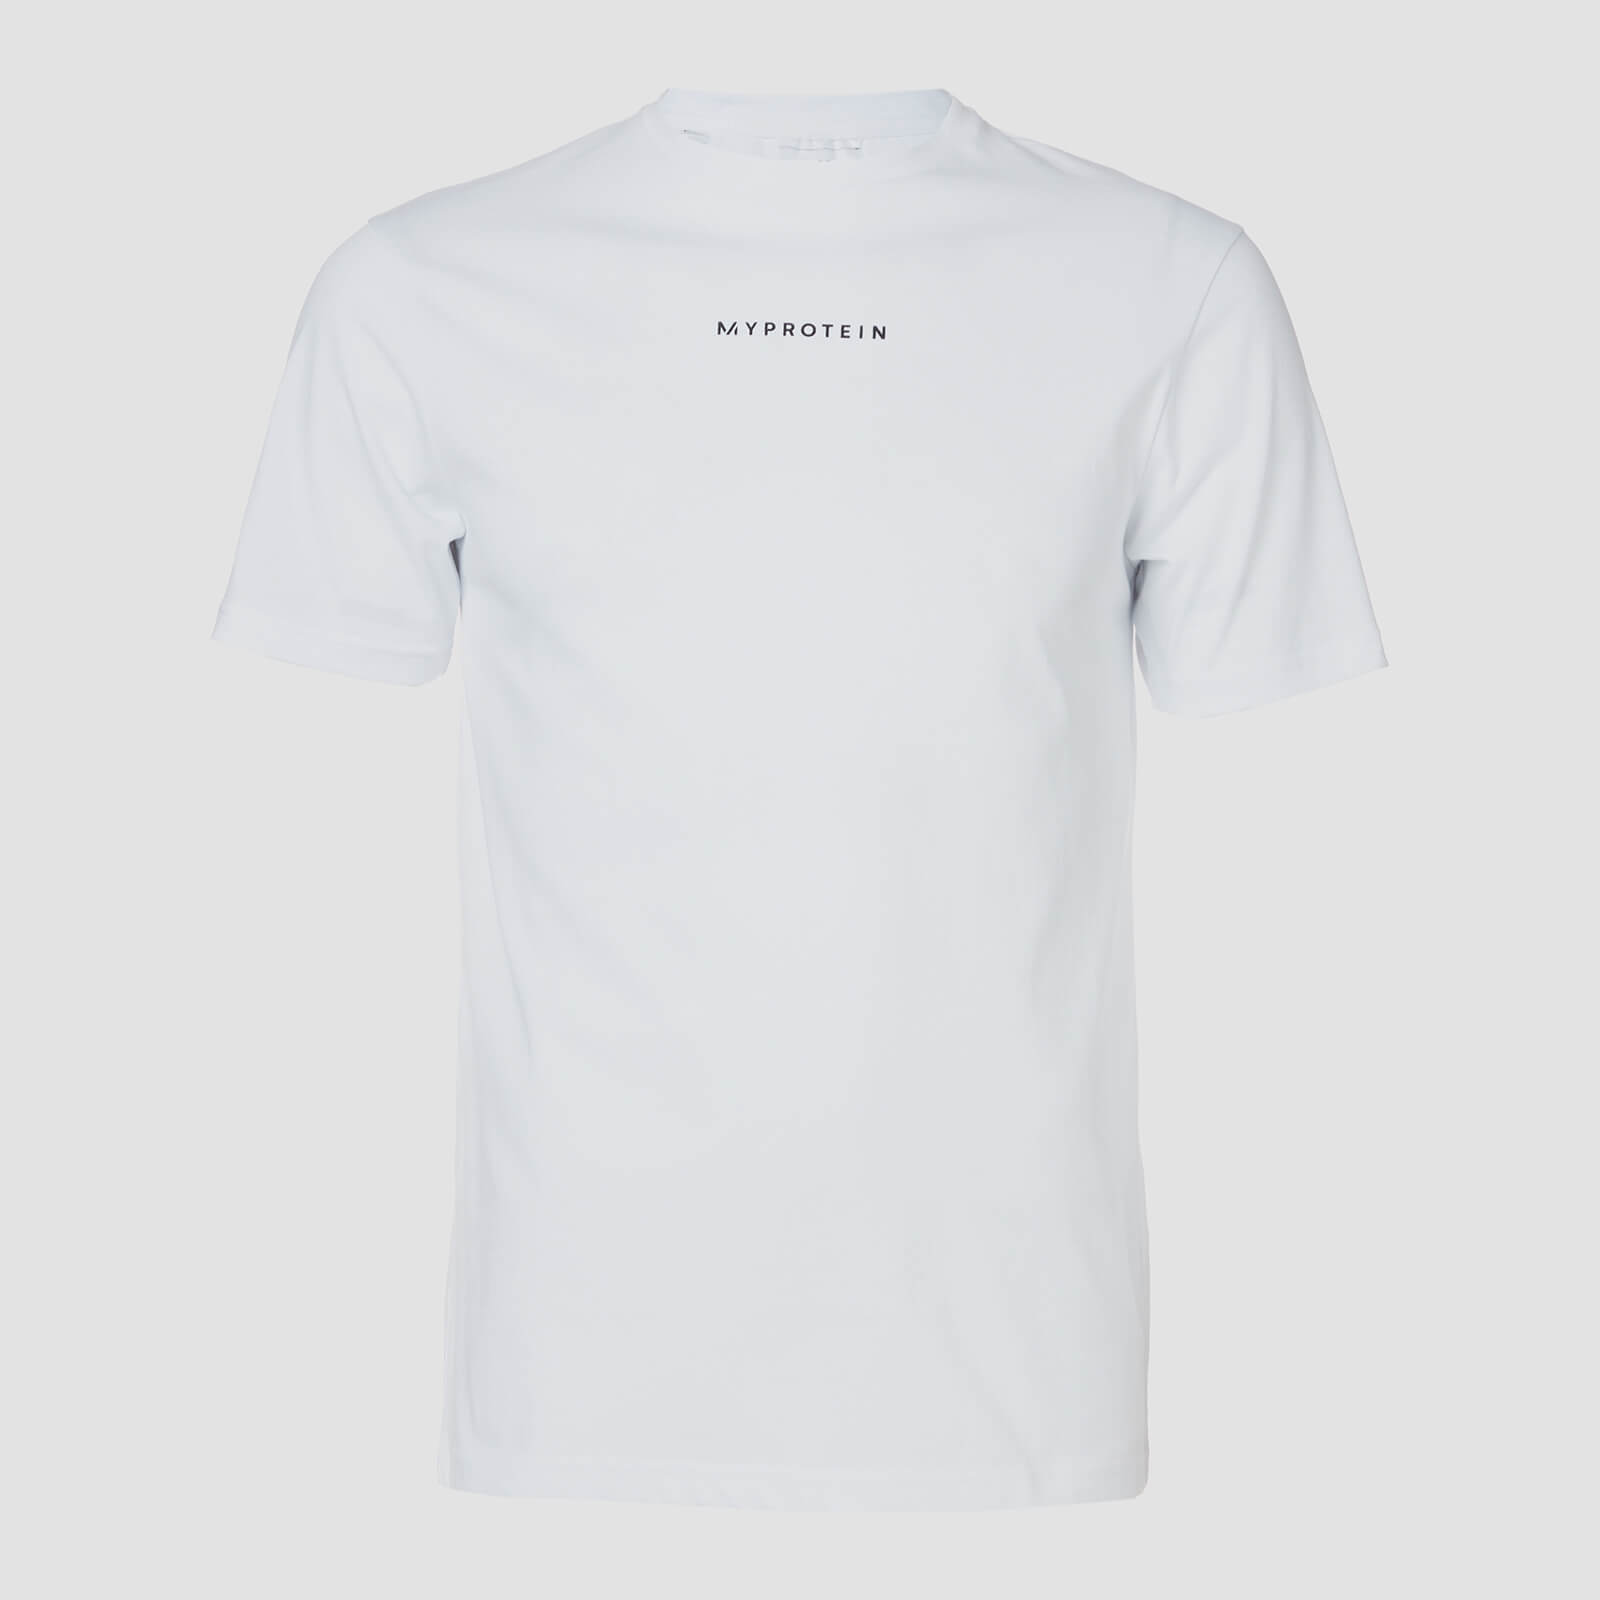 Myprotein T-shirt Original Contemporary - Bianco - XL